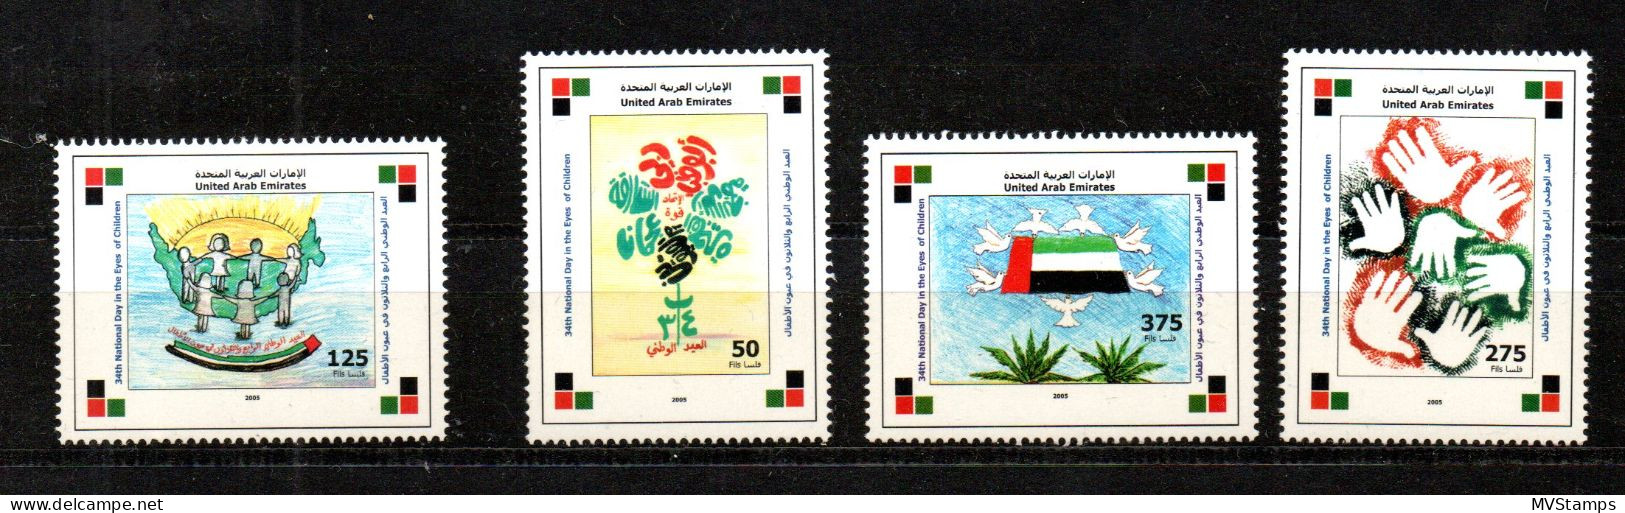 Vereinte Arab Emirates 2005 Satz 811/14 Kinderzeichnungen/Flagge Postfrisch - United Arab Emirates (General)